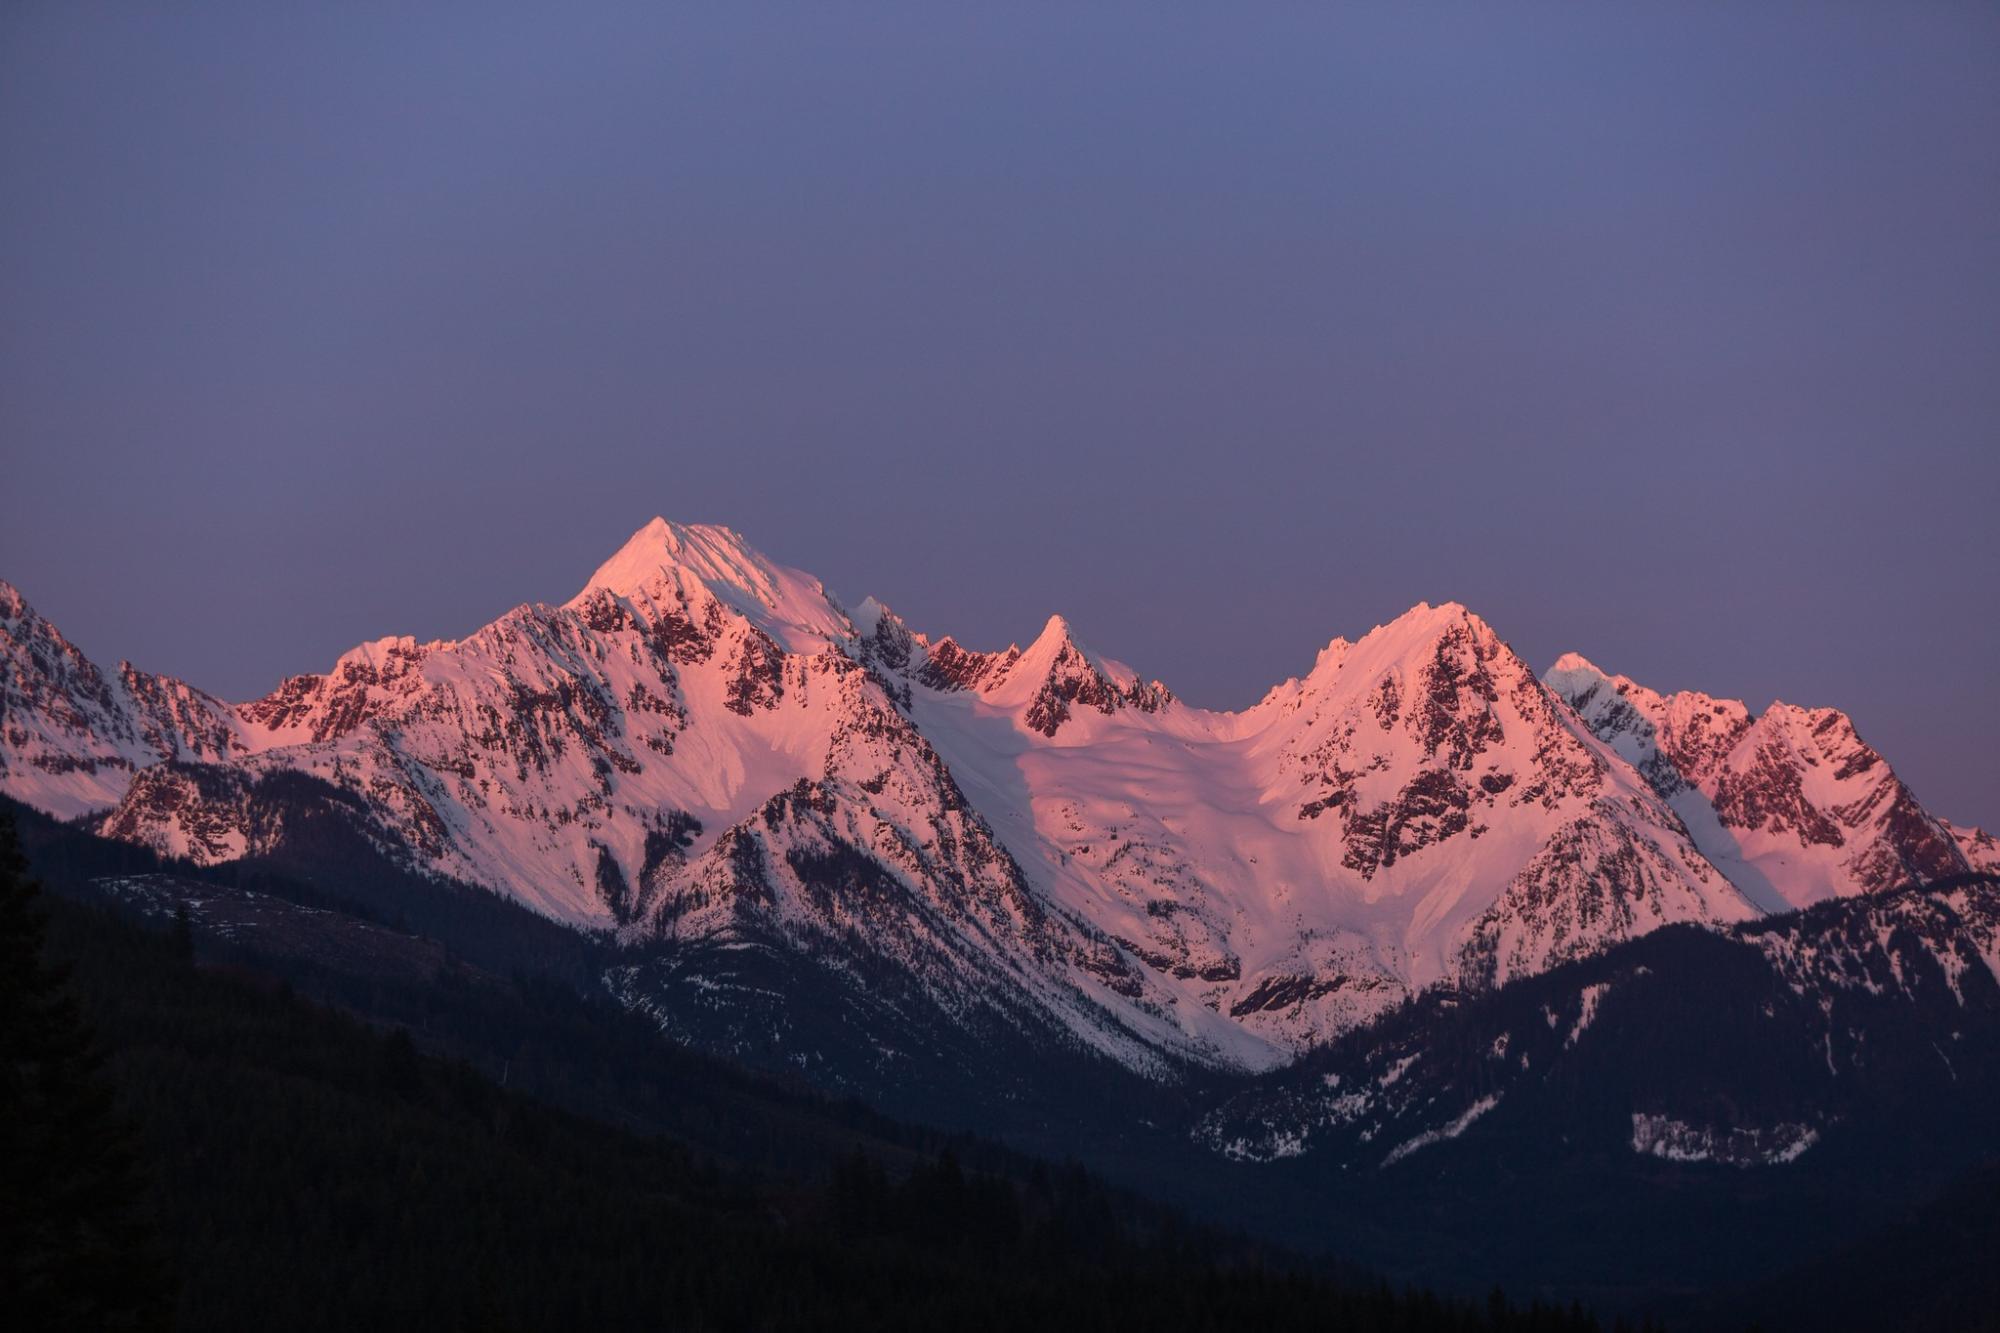 Alpine glow on mountain range at sunset